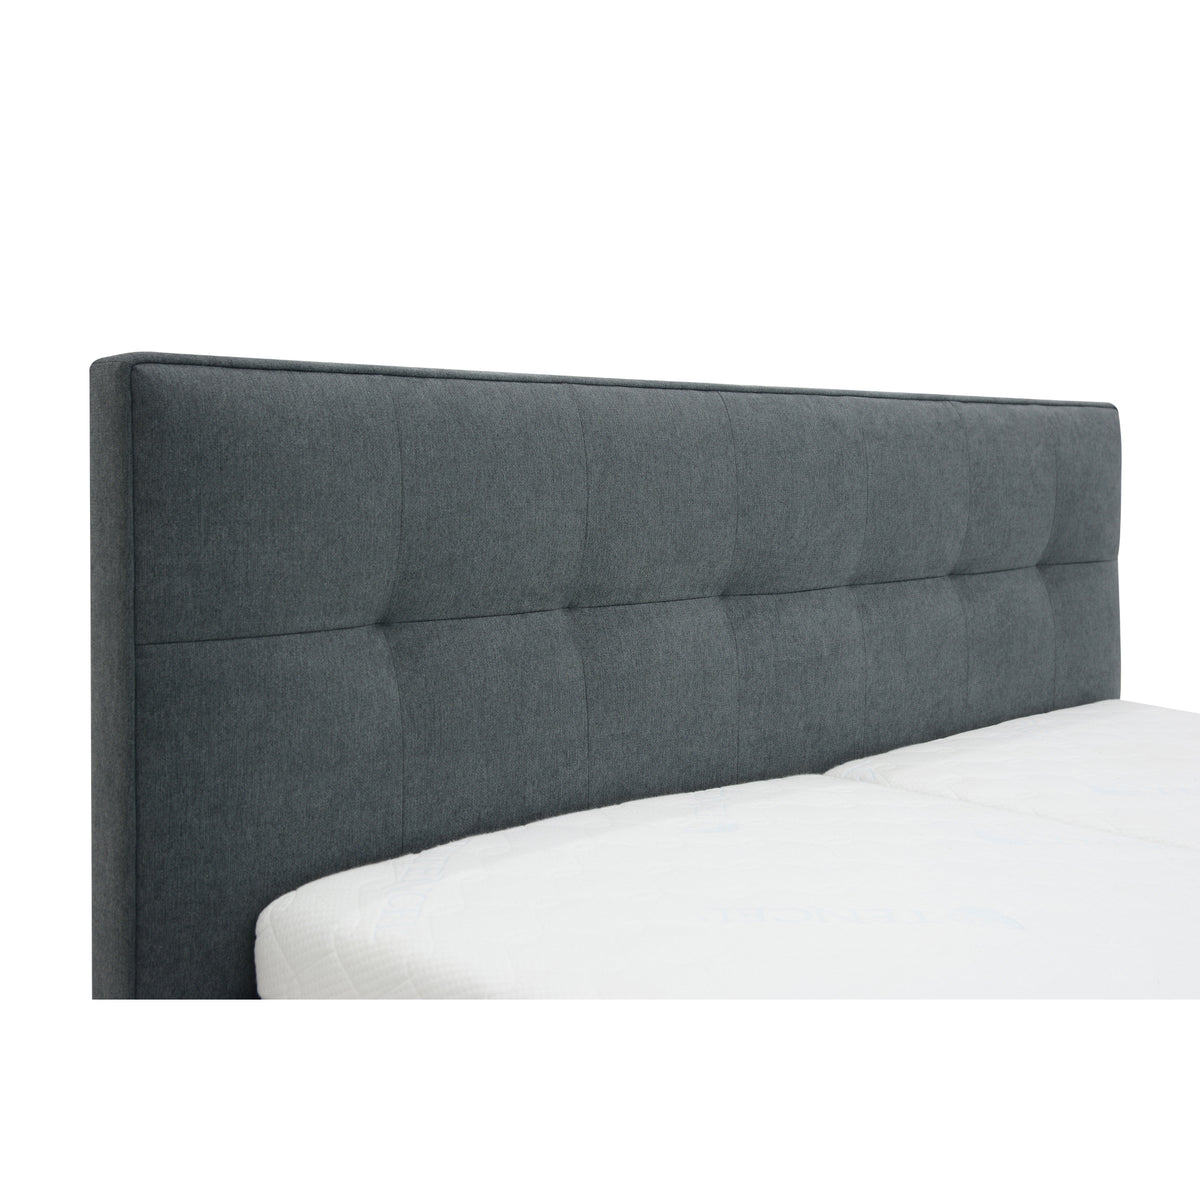 Čalouněná postel Trend 160x200, šedá, vč. matrace, boční výklop